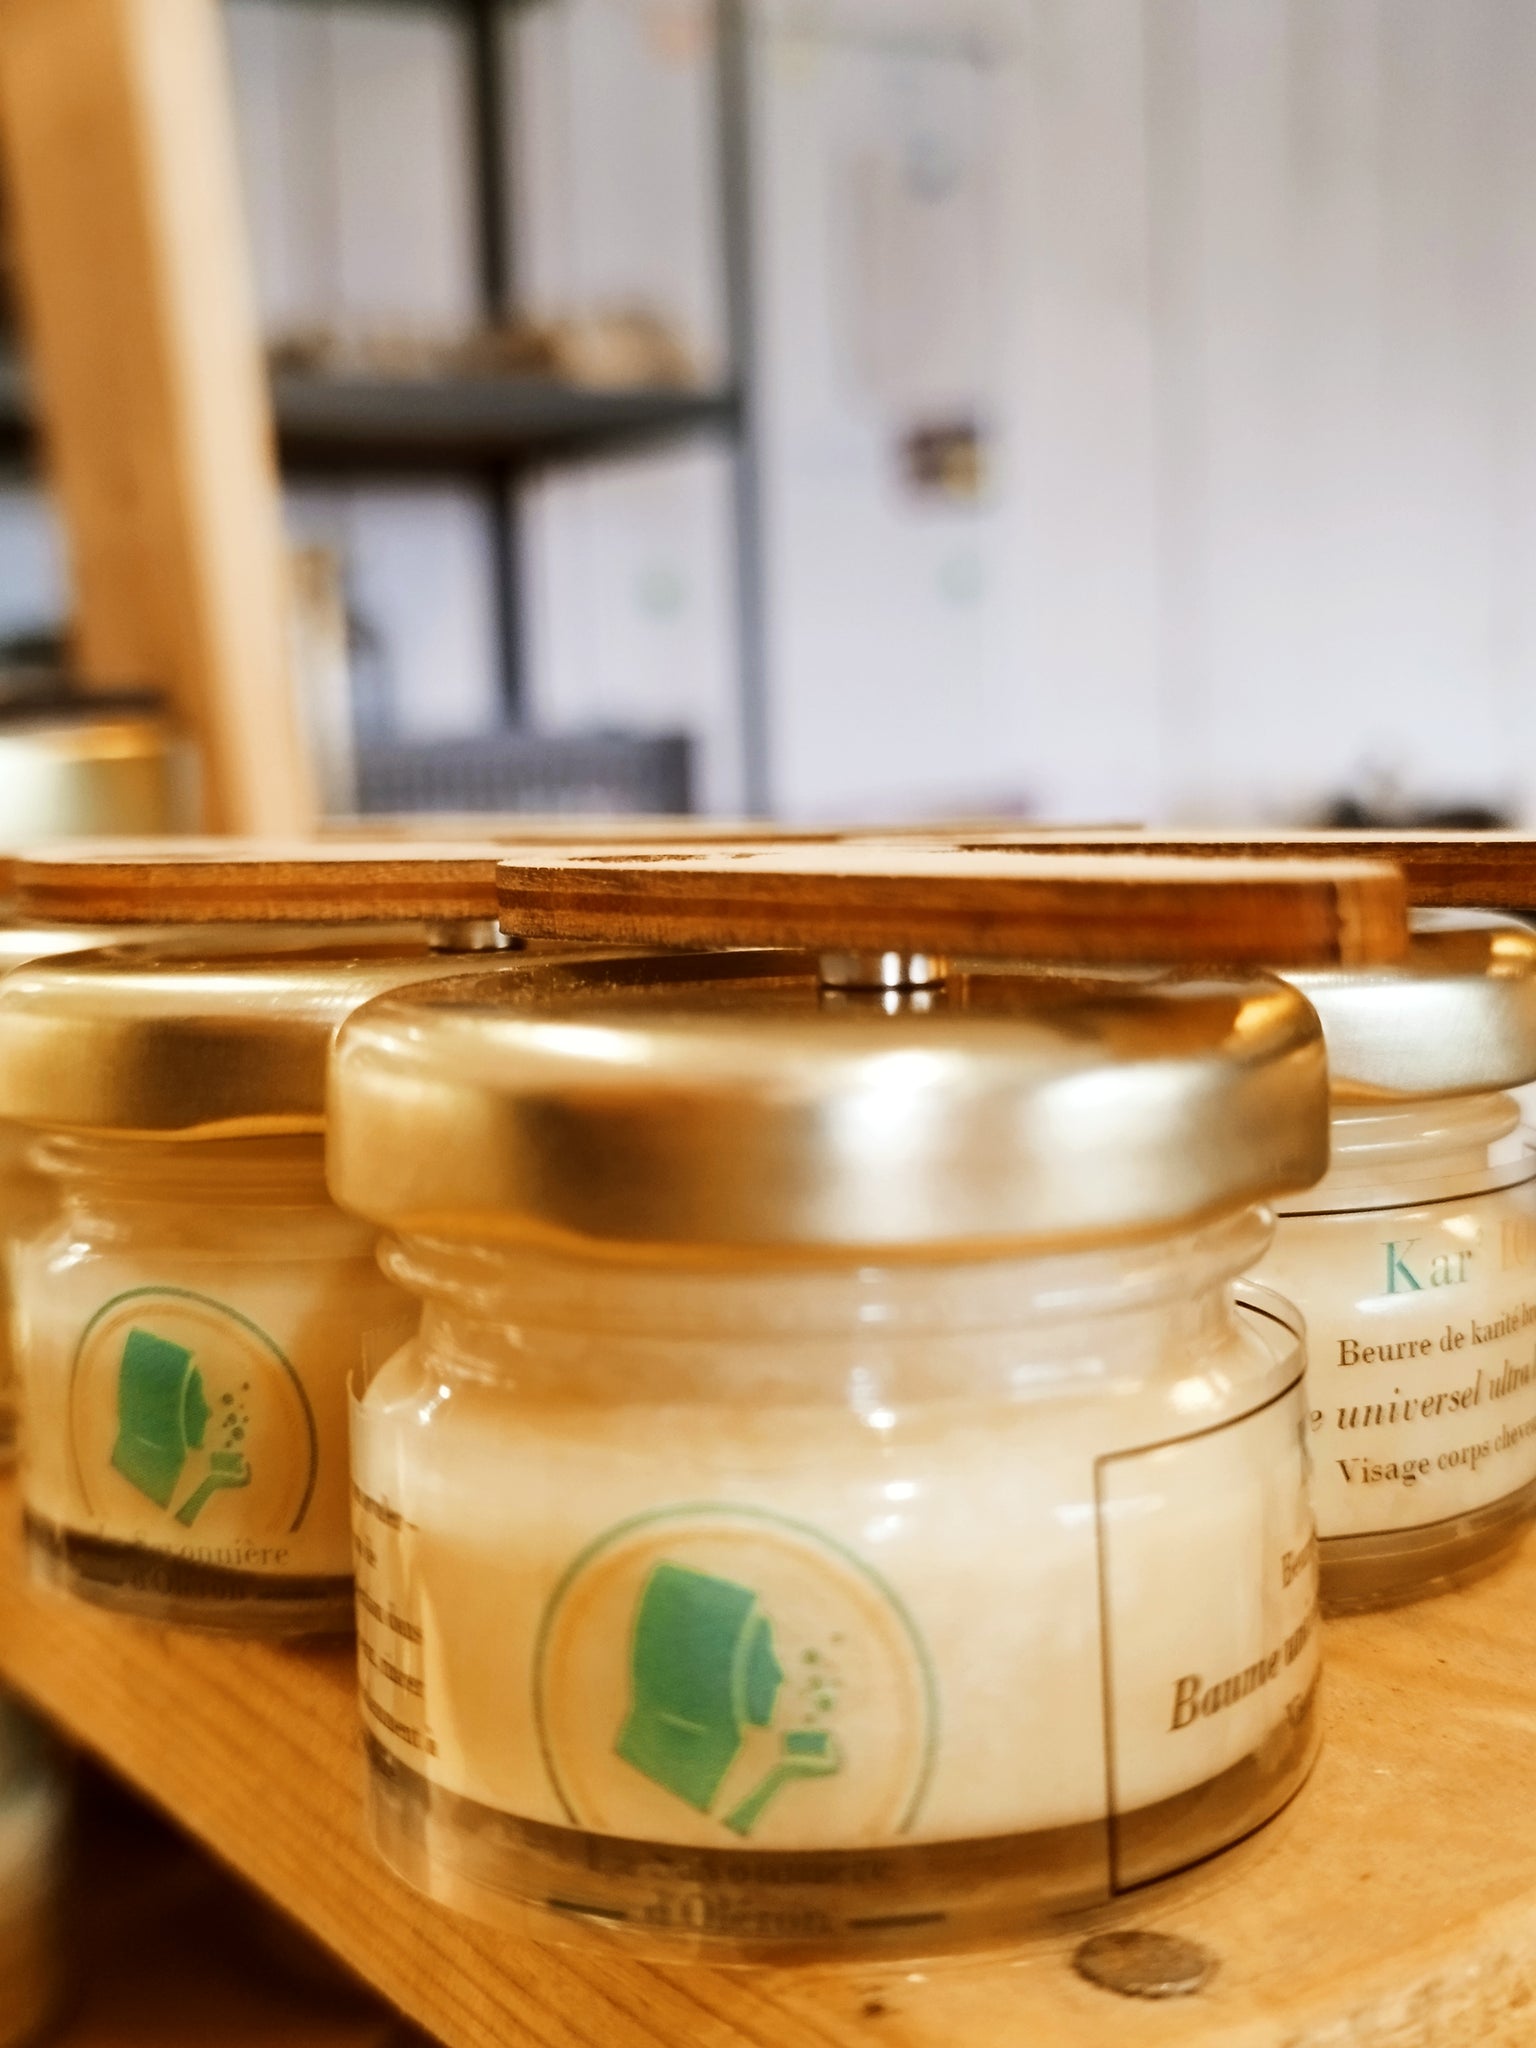 Beurre de karité désodorisé - 100% pur et naturel - équitable & bio